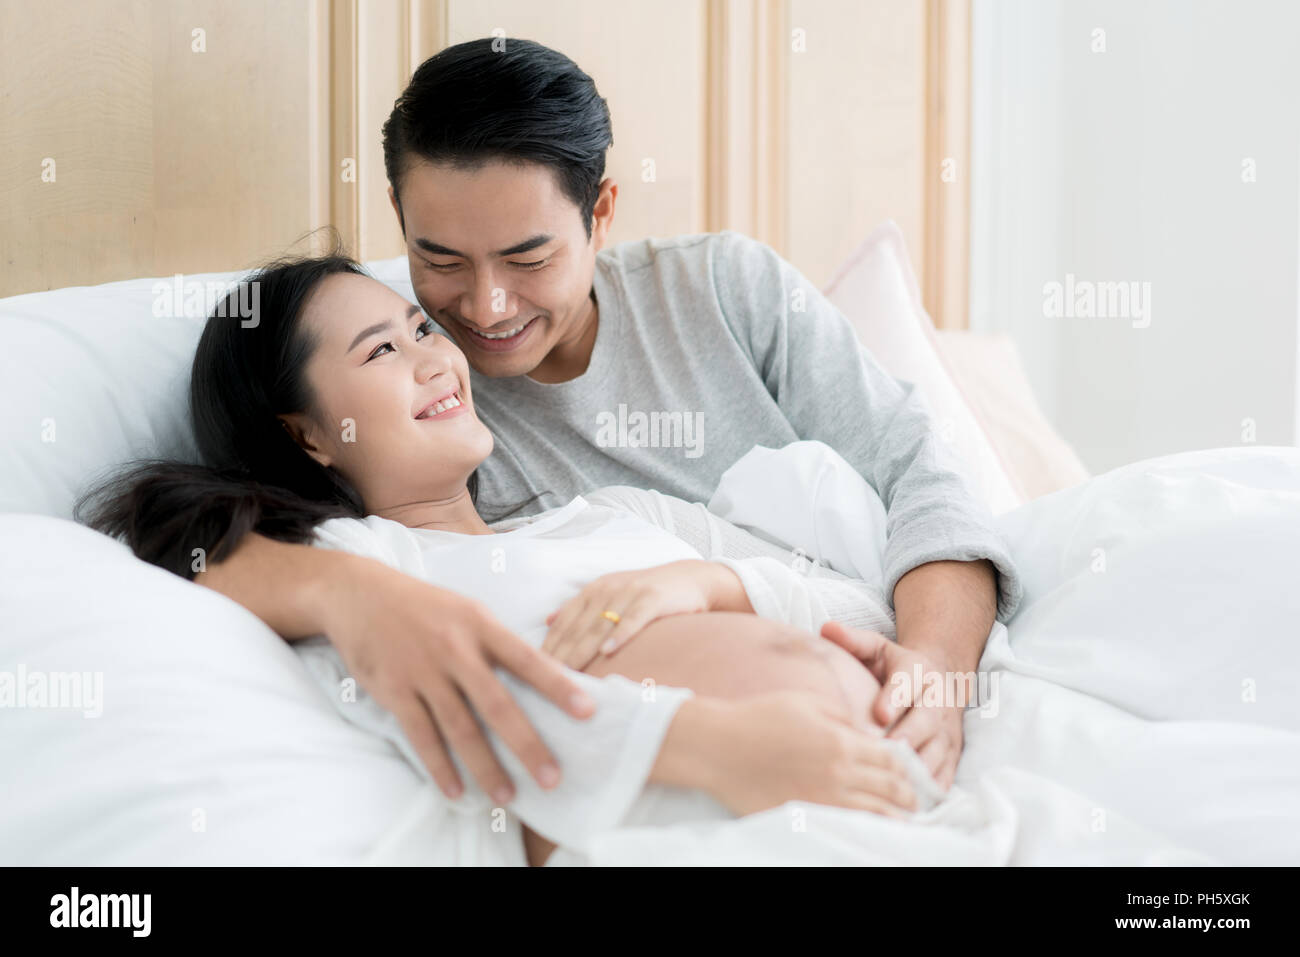 Stattliche asiatischer Mann und seine schöne schwangere Frau sind, umarmen und lächelnd, während zu Hause im Bett liegen. Stockfoto